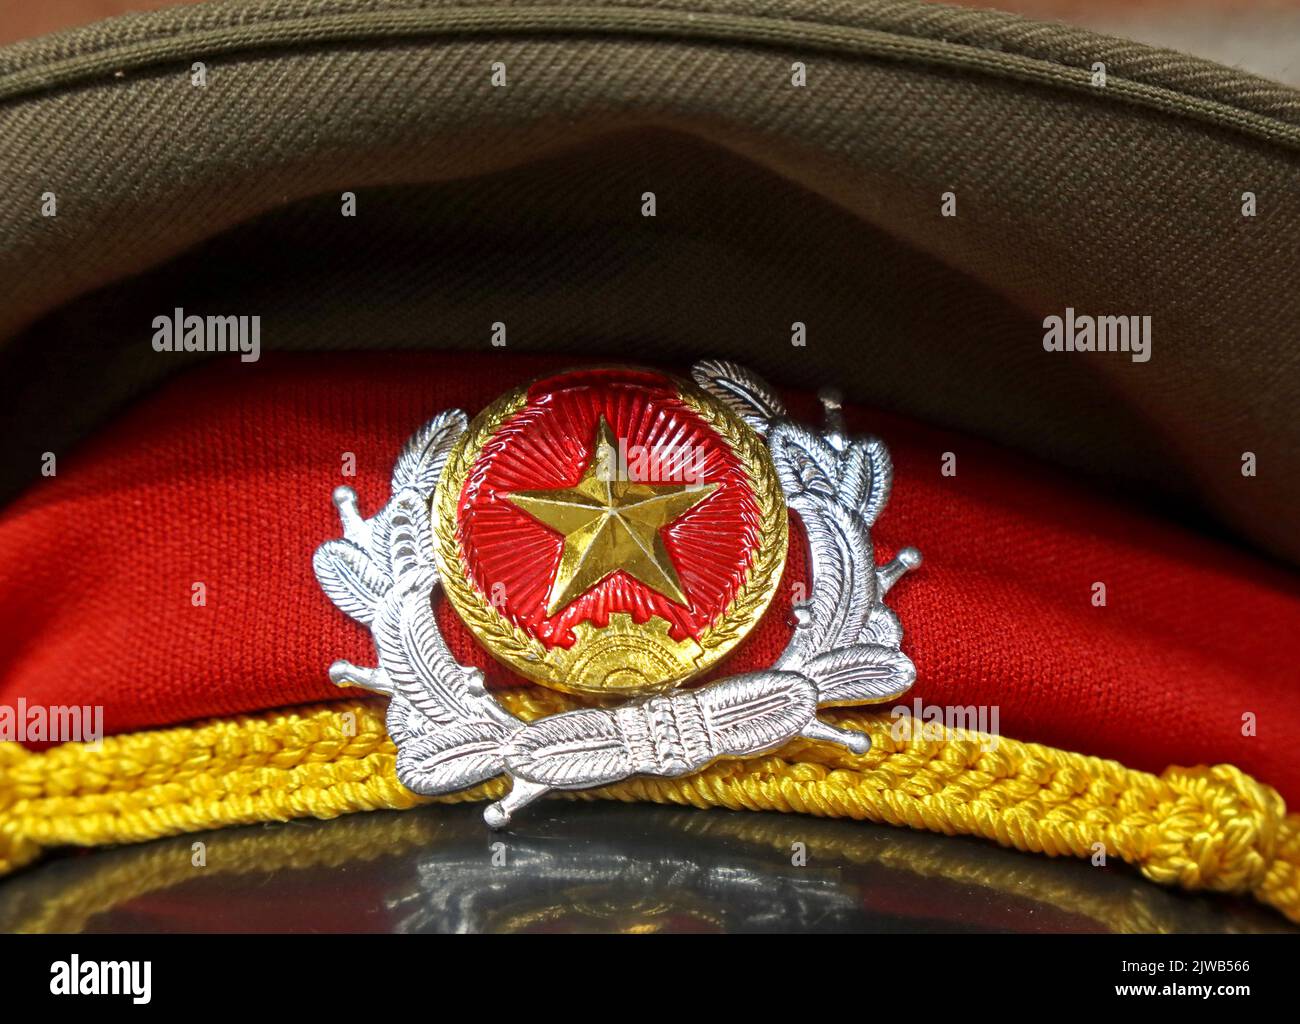 Der goldene Stern der CCCP der Sowjetunion auf einer Militärmütze, die russische Militärmütze, die Invasion der Ukraine - die Wladimir Putin-Sonderoperation Stockfoto